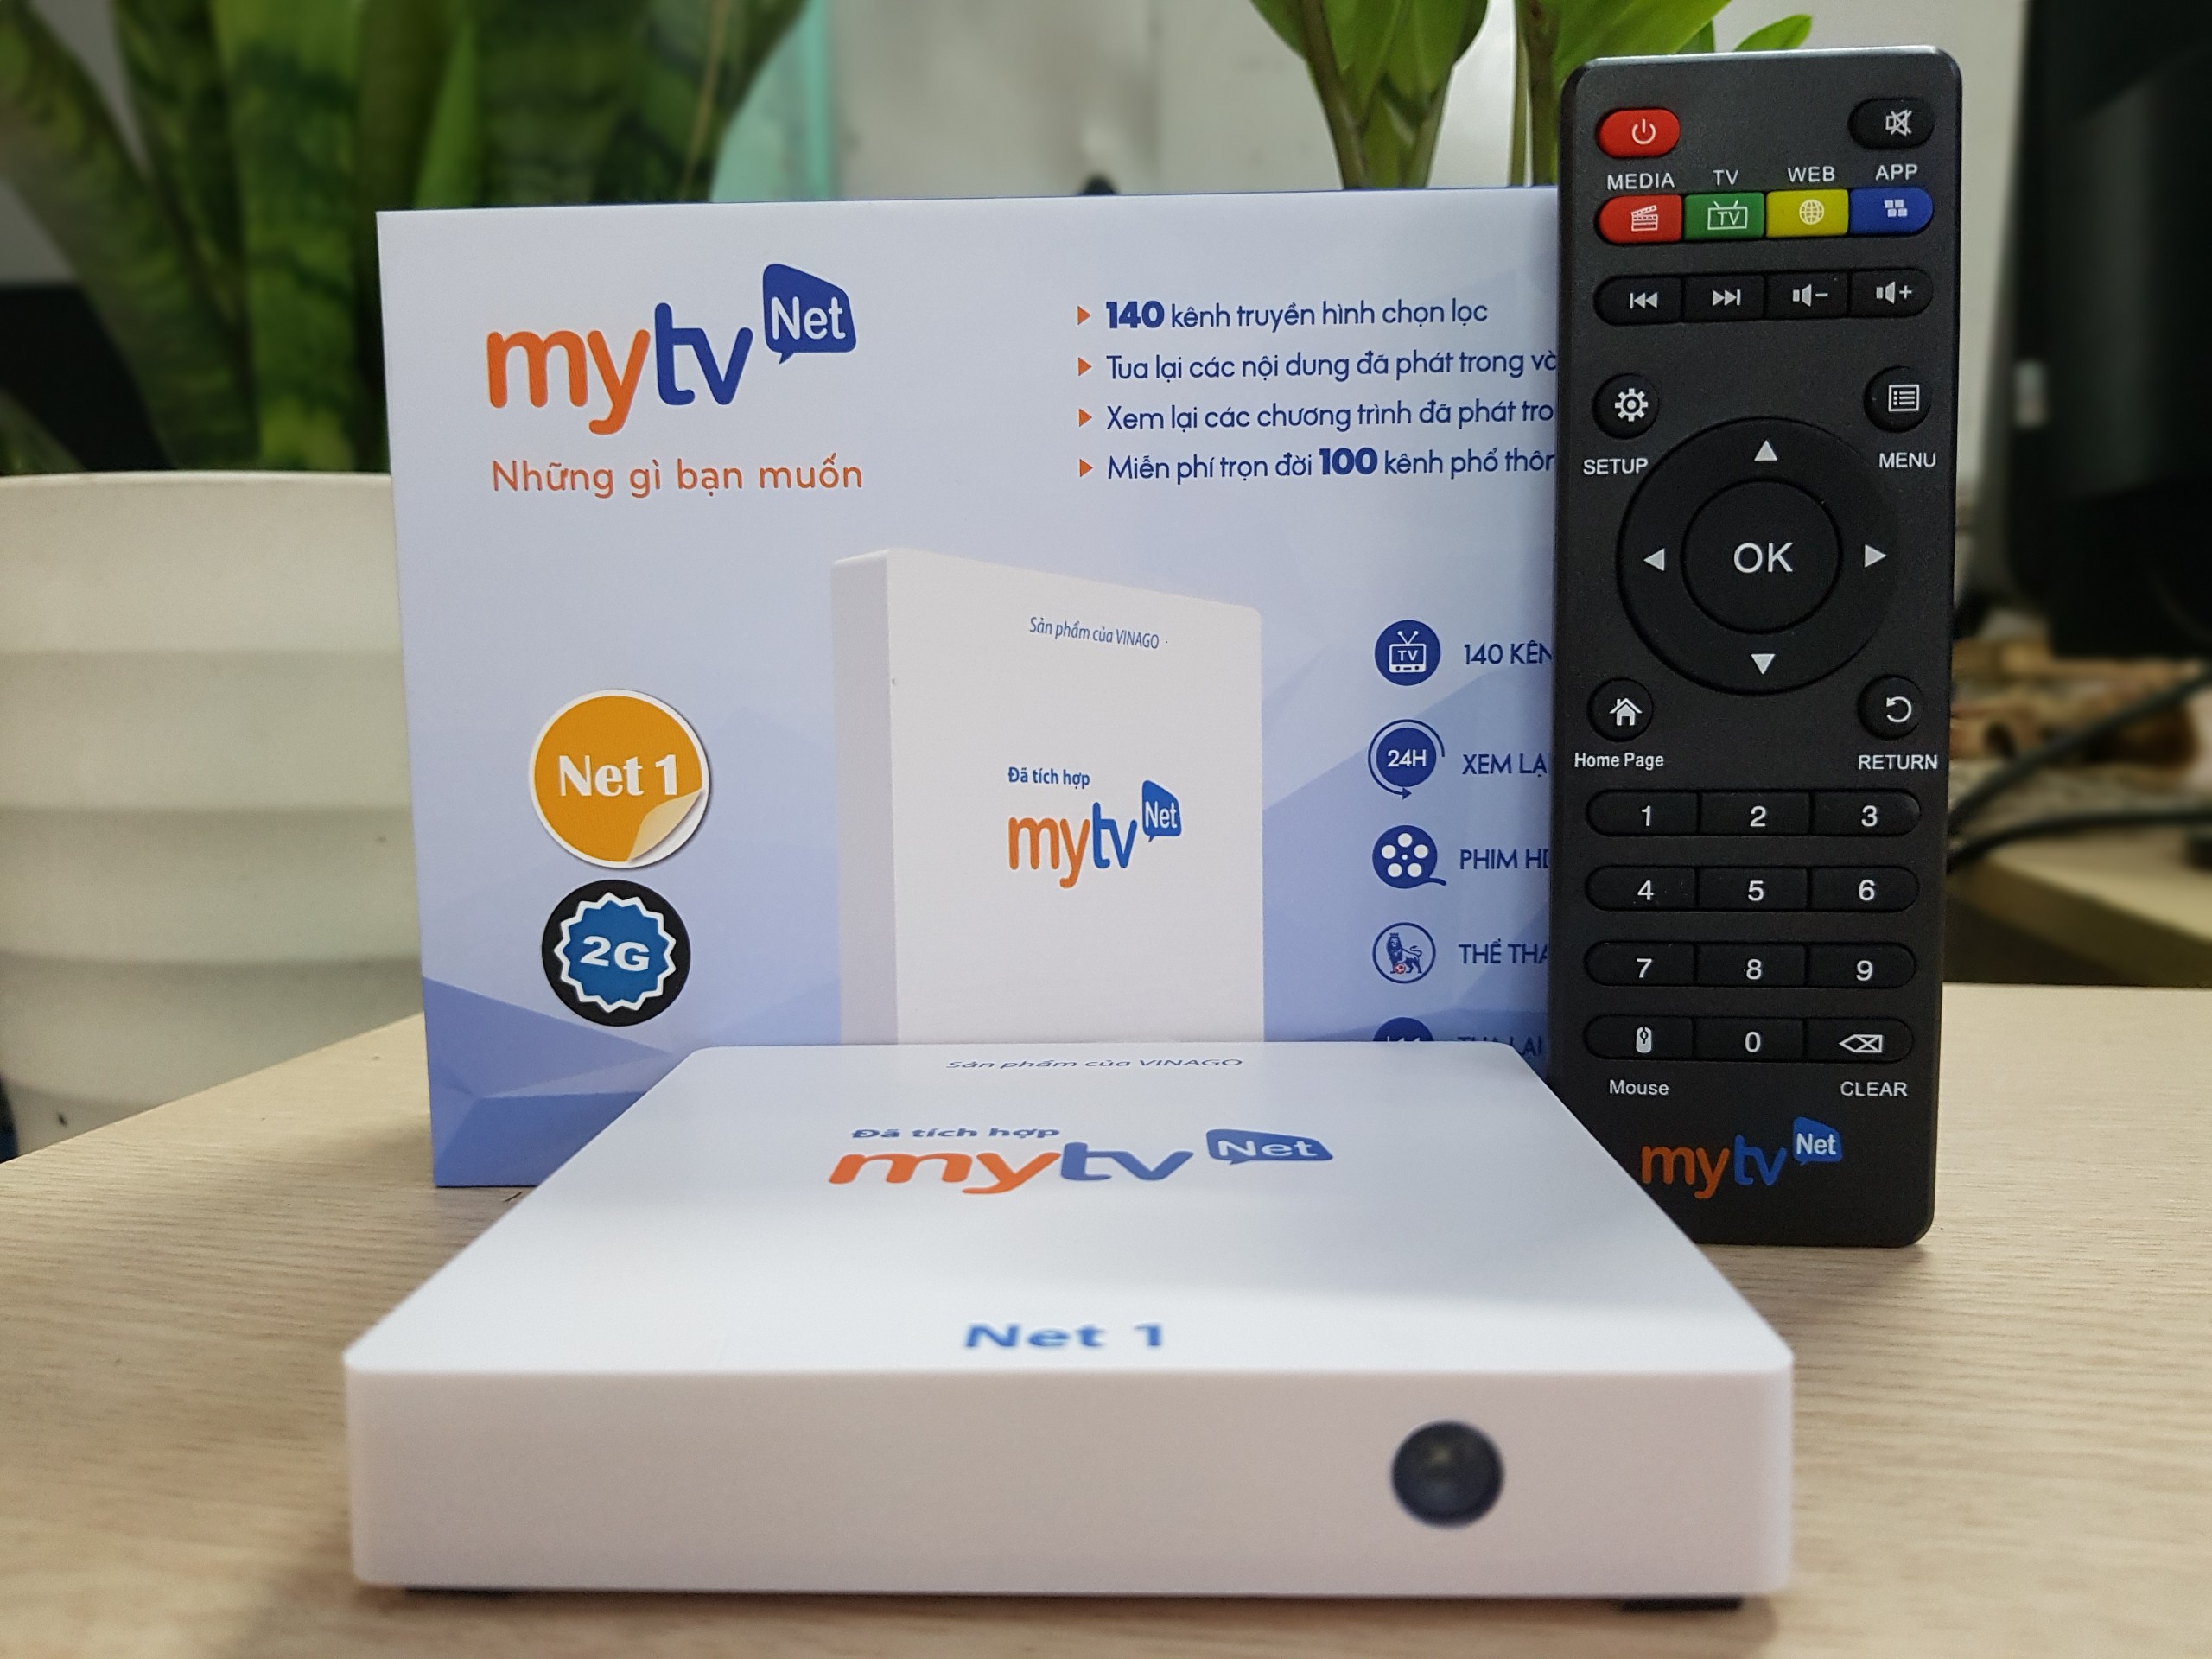 Android MyTV Net Ram 2G Rom 16Gb Tặng Tài khoản HDplay, hỗ trợ điều khiển Giọng nói